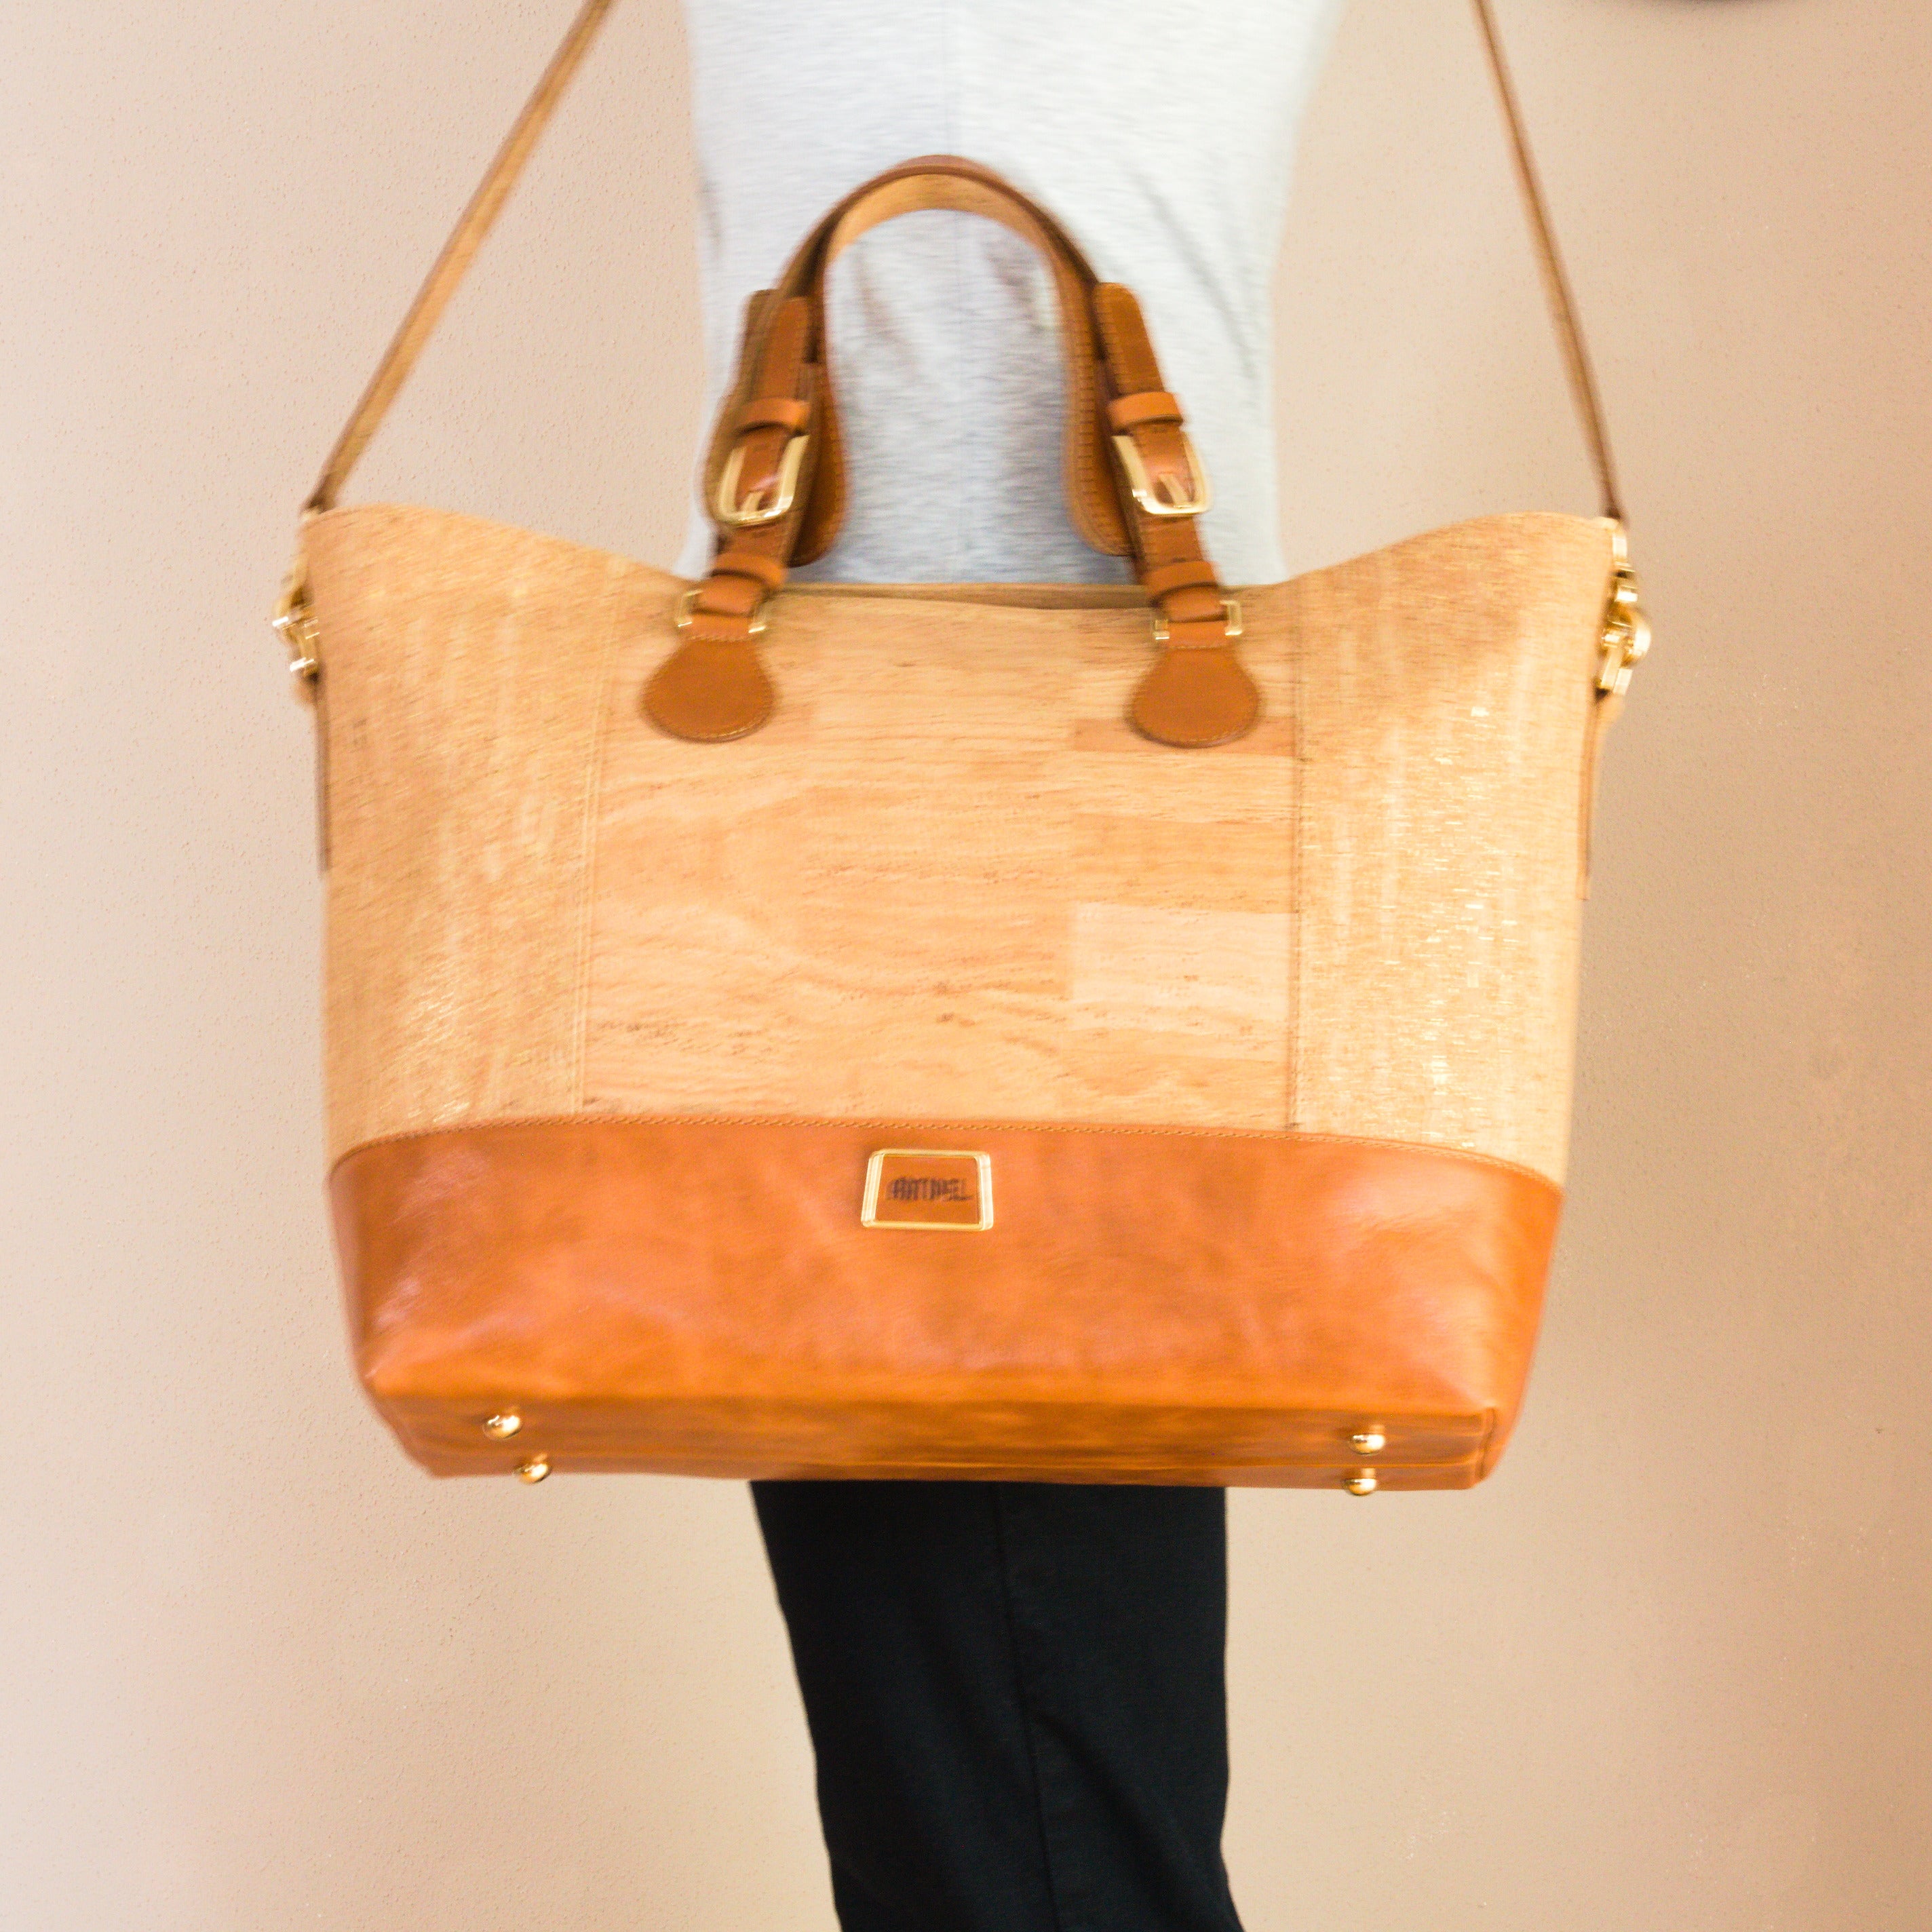 Kork Handtasche * in 2 Varianten * Umhängetasche für Frauen * Crossbody * Shopper * handmade in Portugal